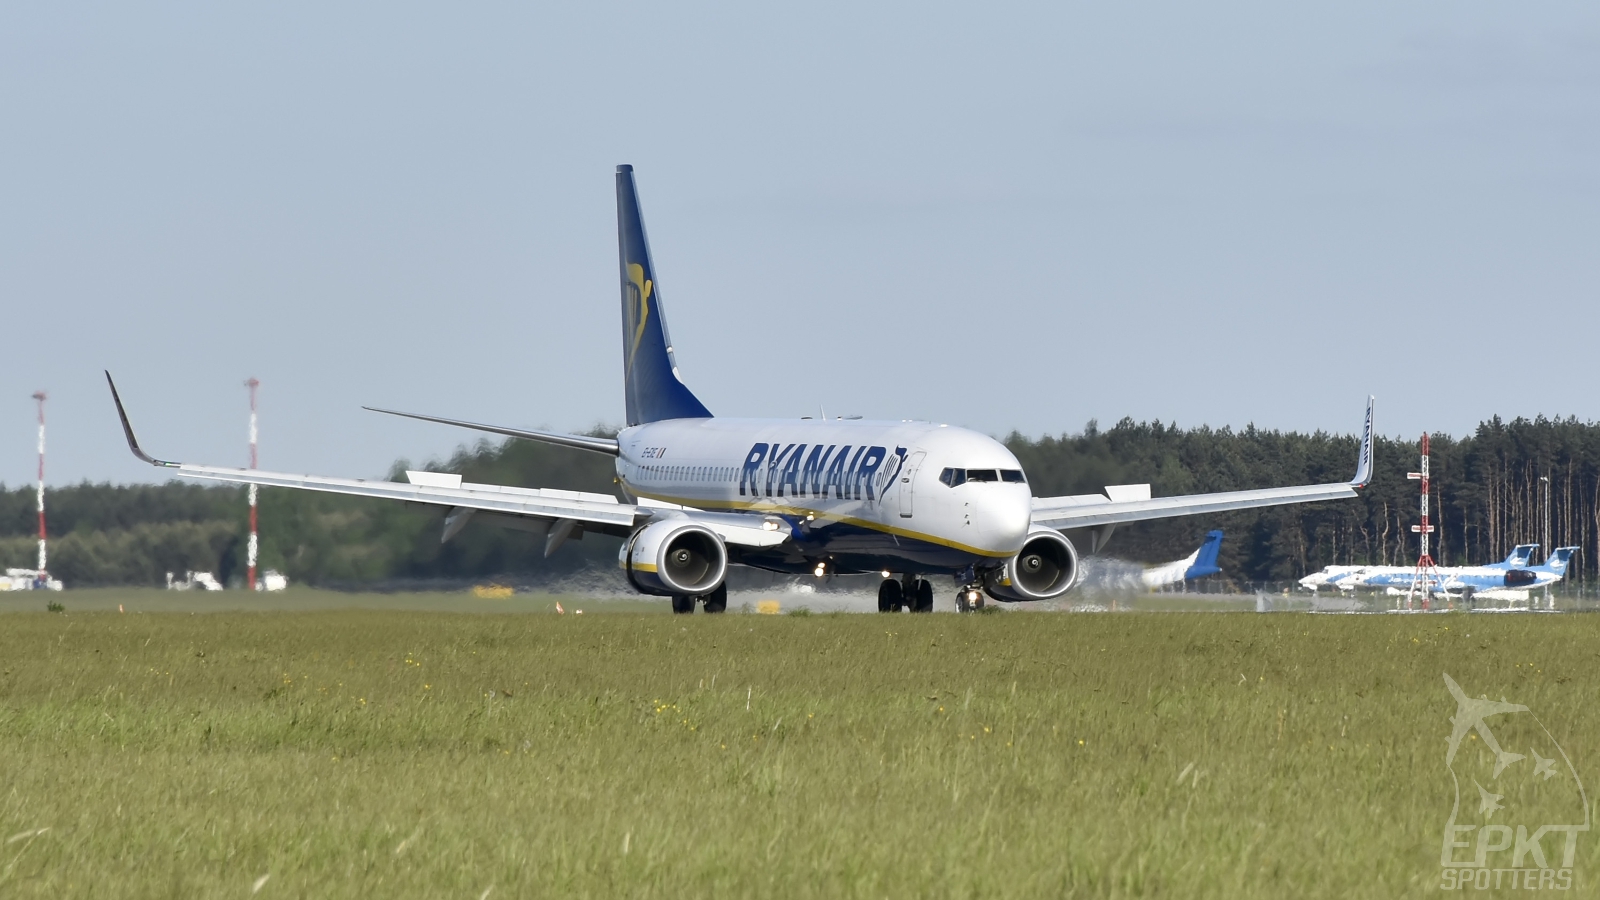 EI-EXE - Boeing 737 -8AS (Ryanair) / Pyrzowice - Katowice Poland [EPKT/KTW]